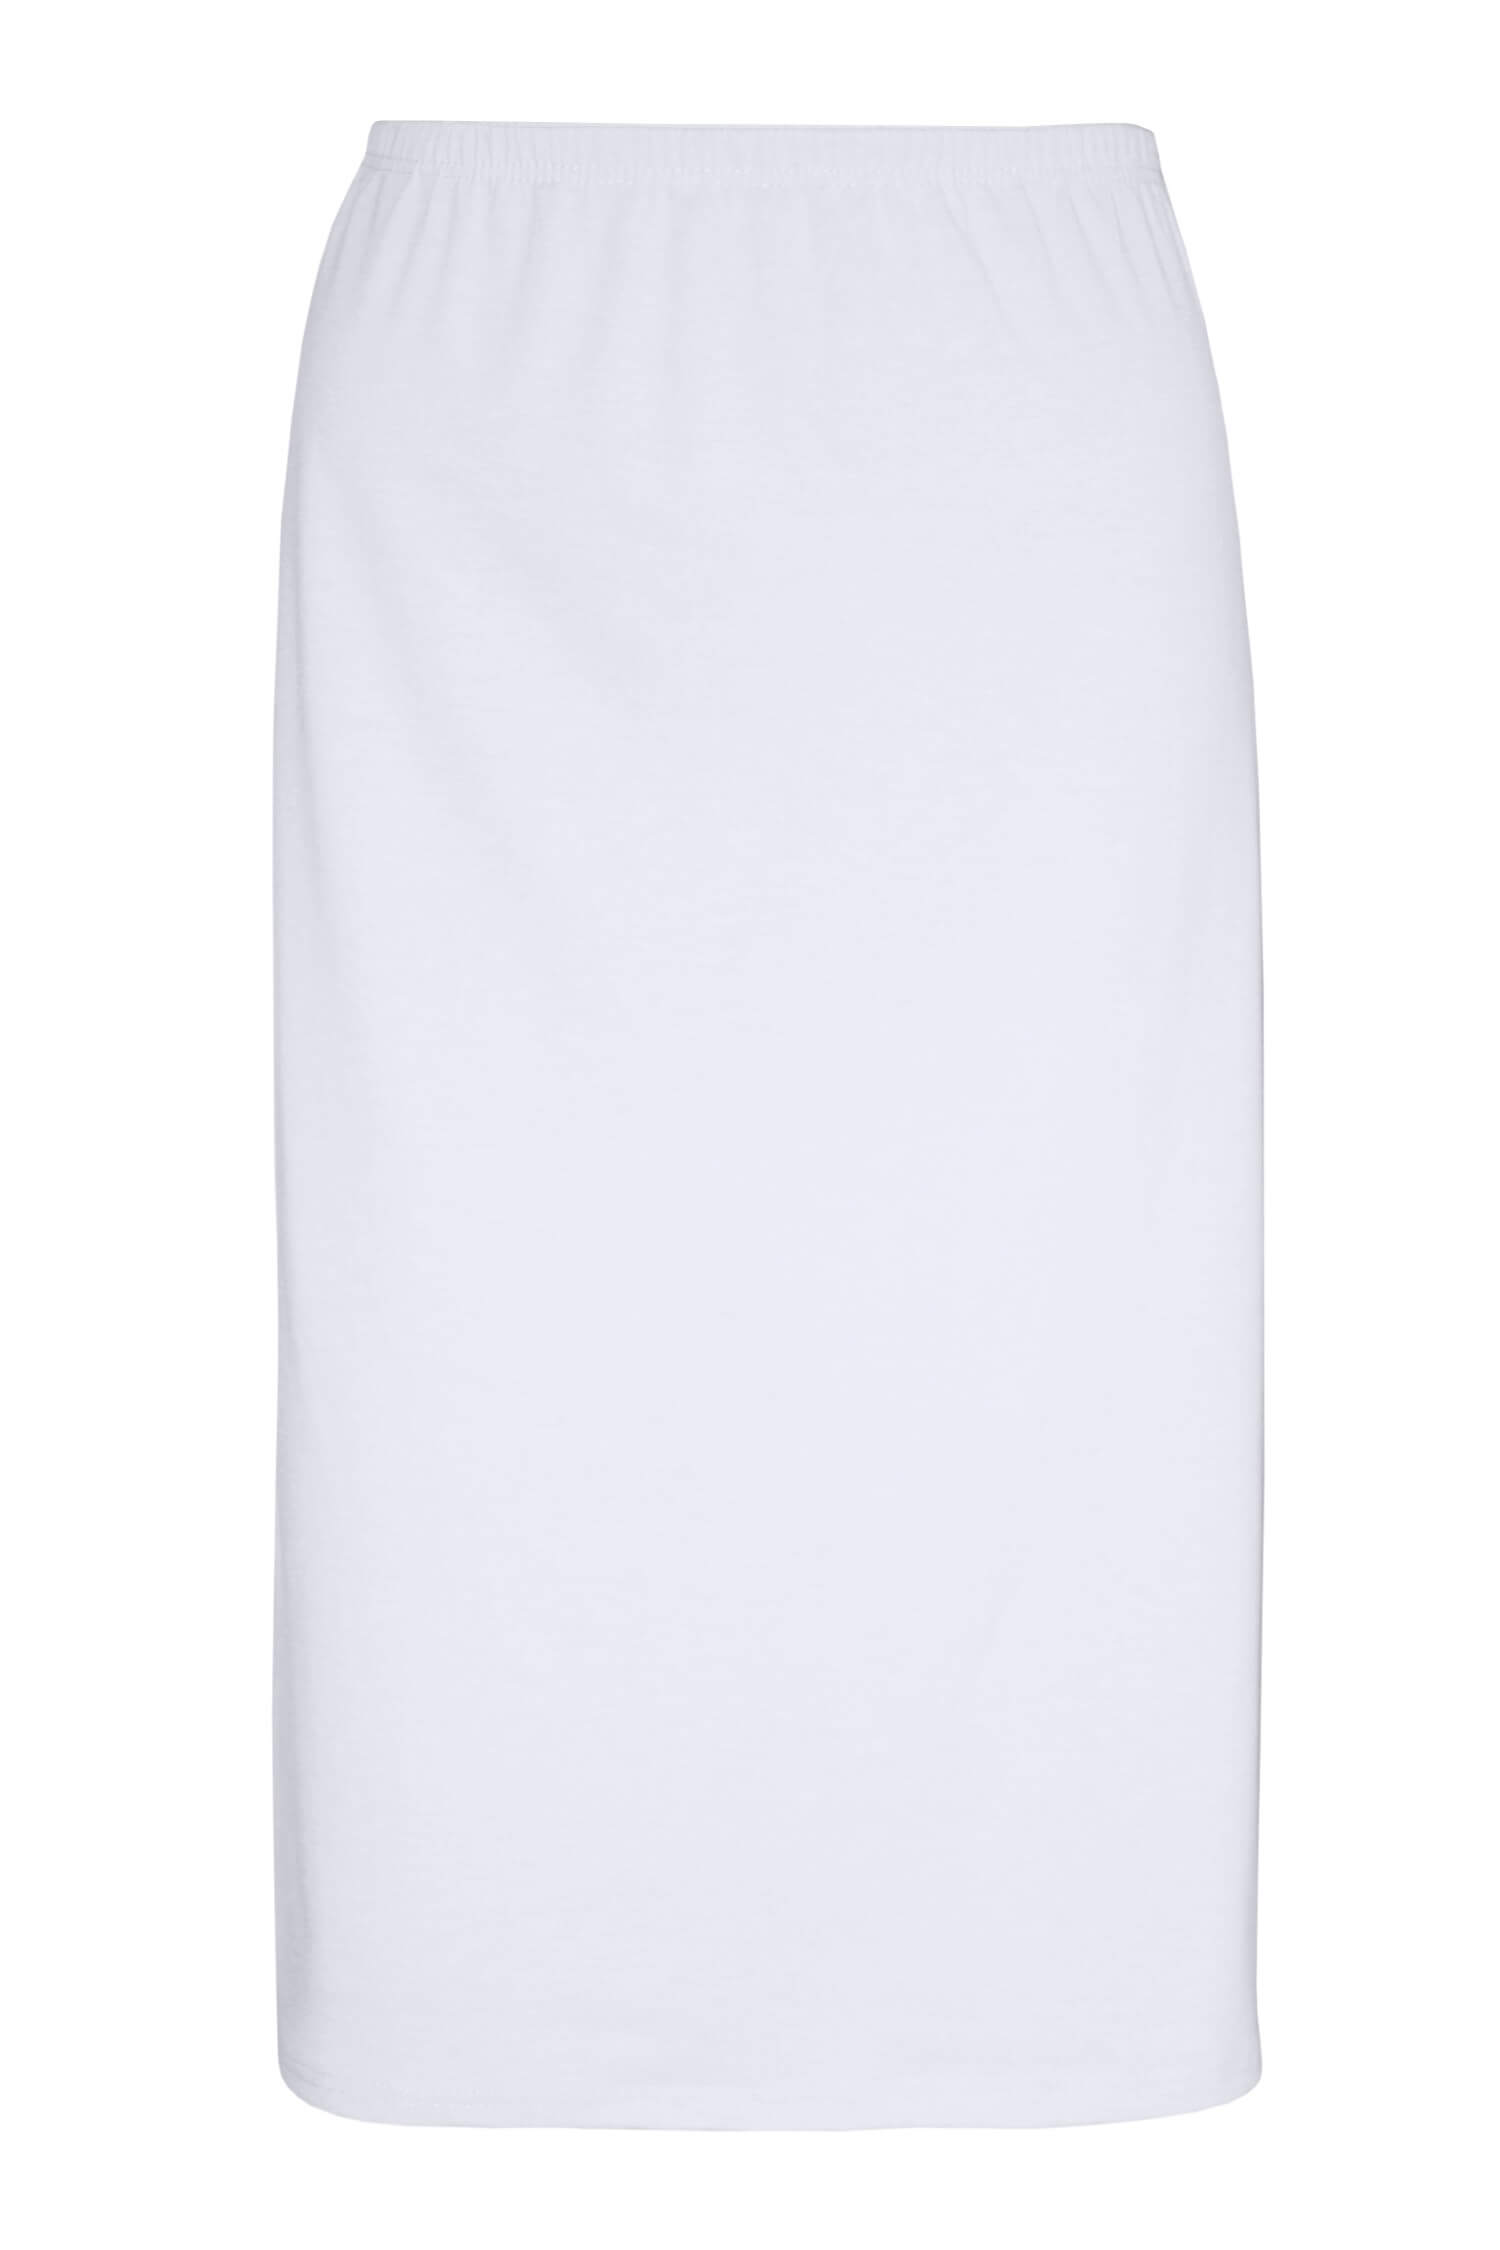 Arnoštka bavlněná spodnička - sukně 716 M bílá